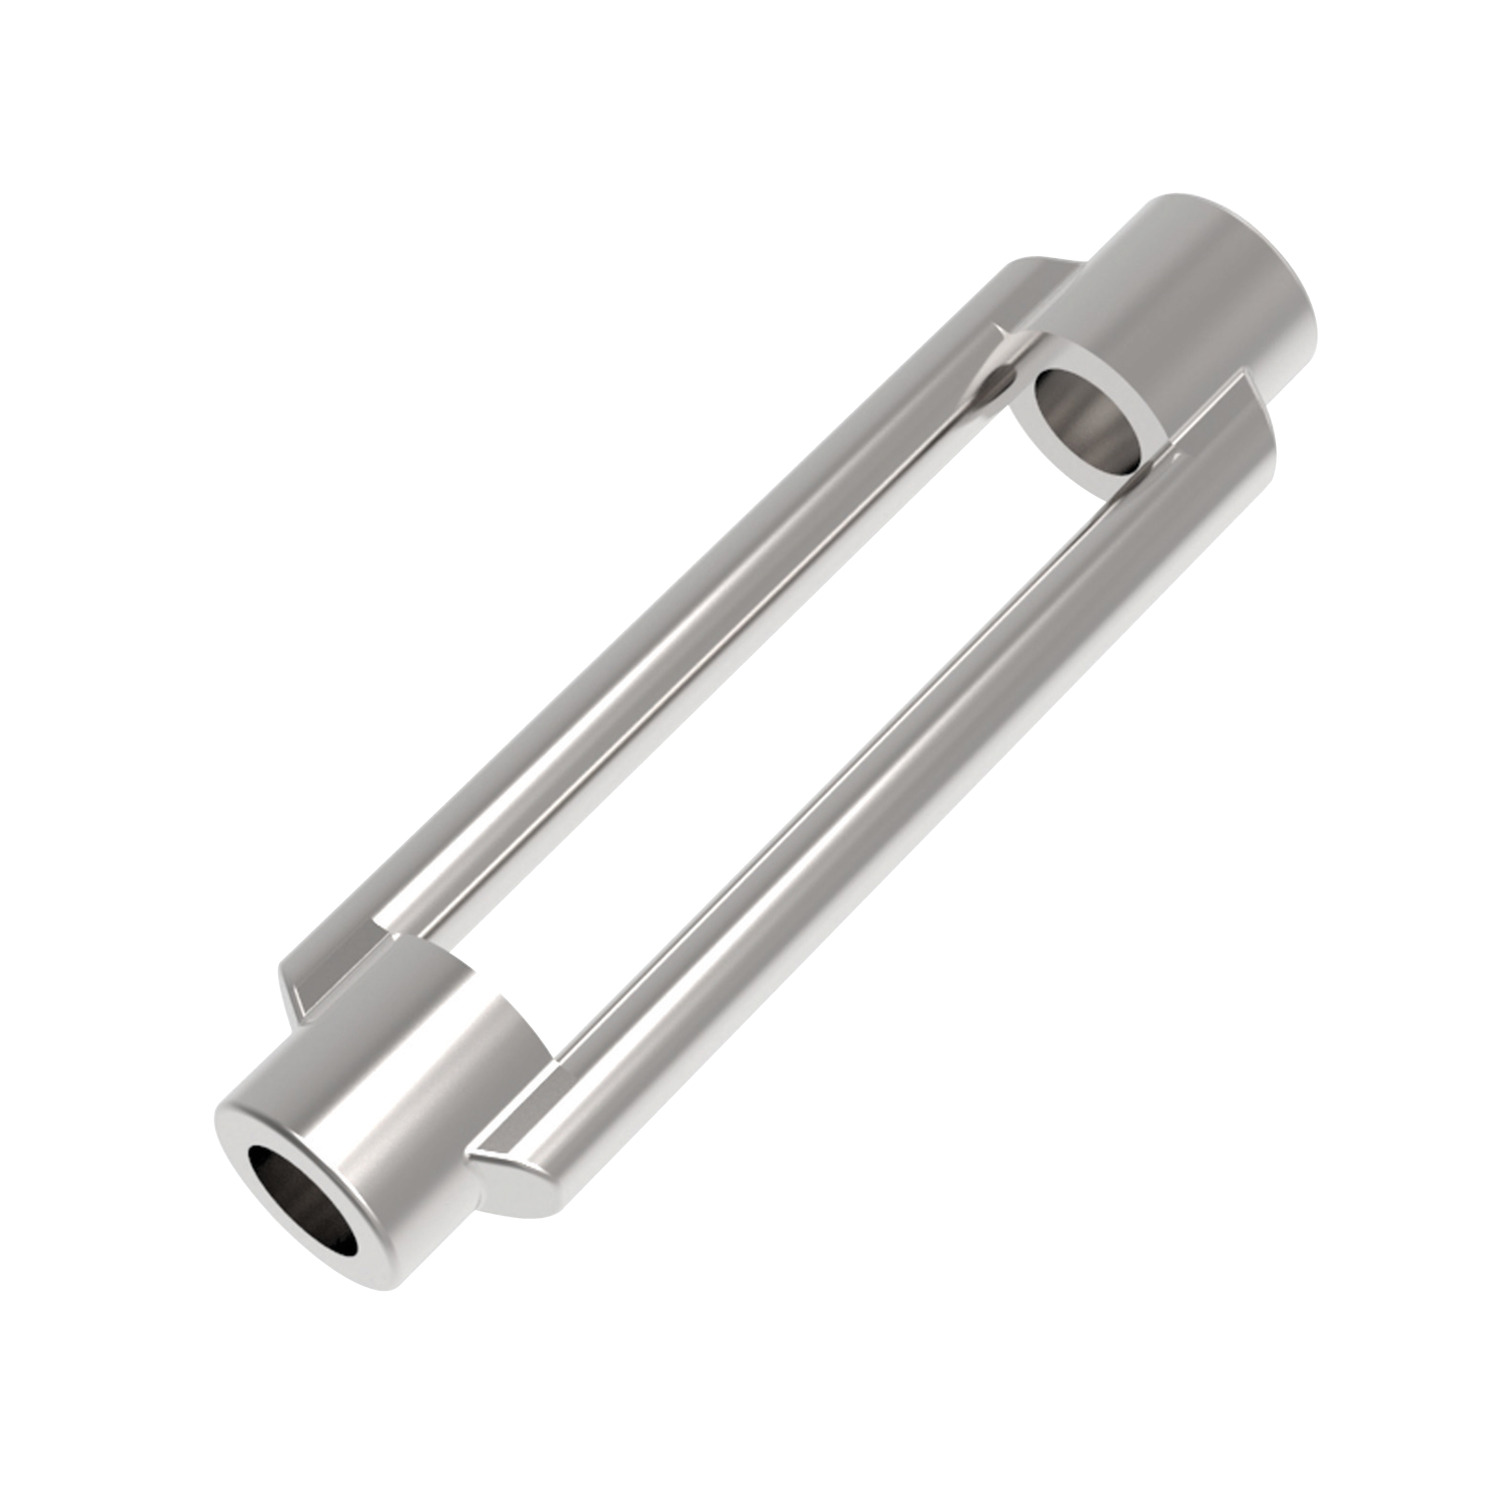 Product R3830, Turnbuckles steel / 